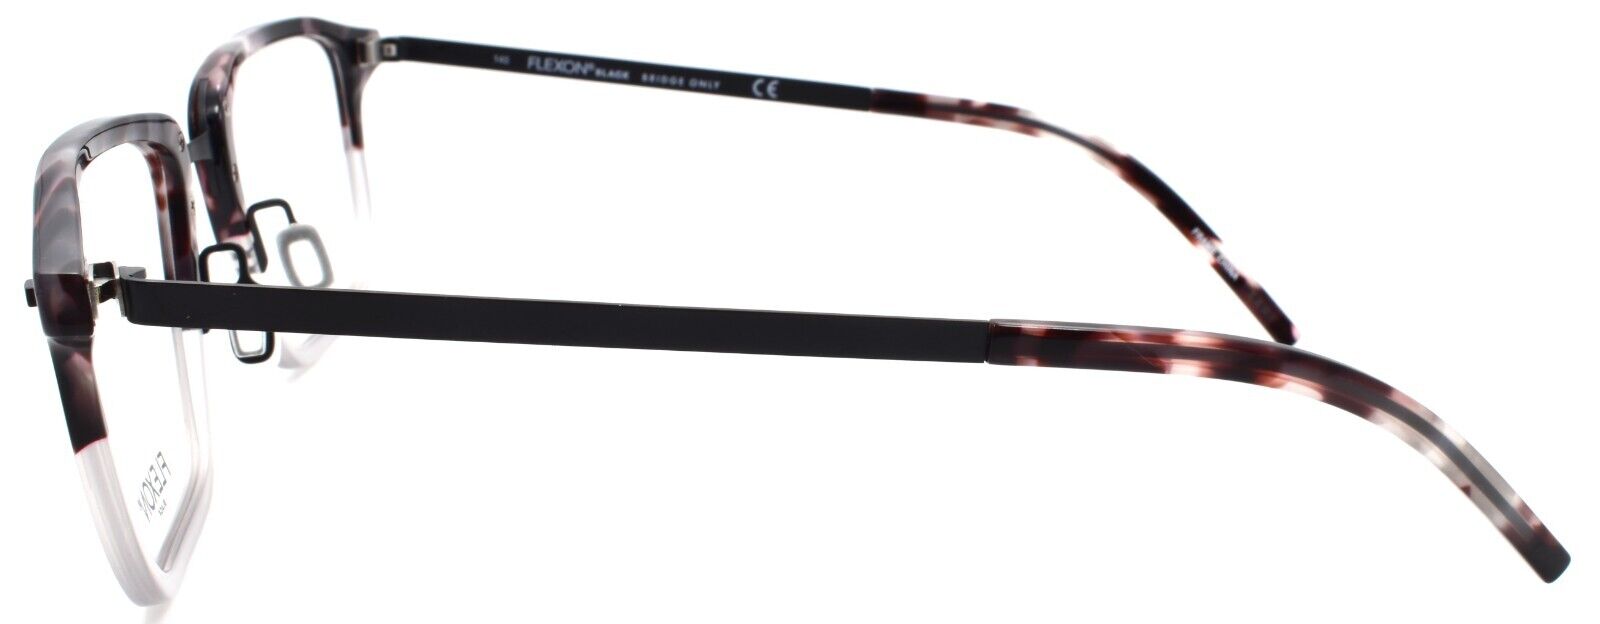 3-Flexon B2037 060 Men's Eyeglasses 55-22-145 Grey Tortoise Gradient-886895562201-IKSpecs